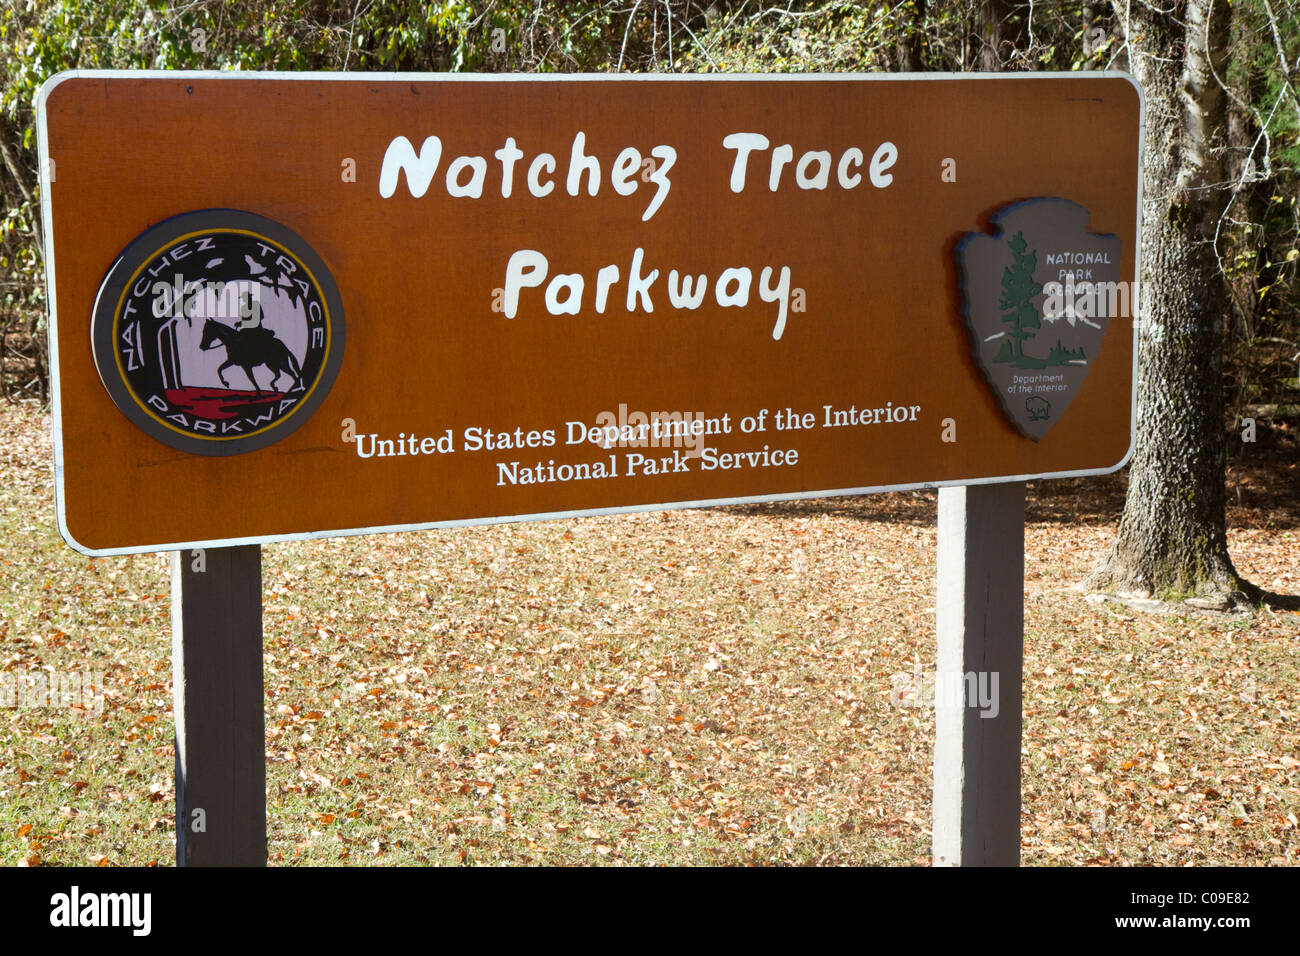 Natchez Trace Parkway exploité par le National Park Service commémore la vieille Natchez Trace dans le Mississipi, USA. Banque D'Images